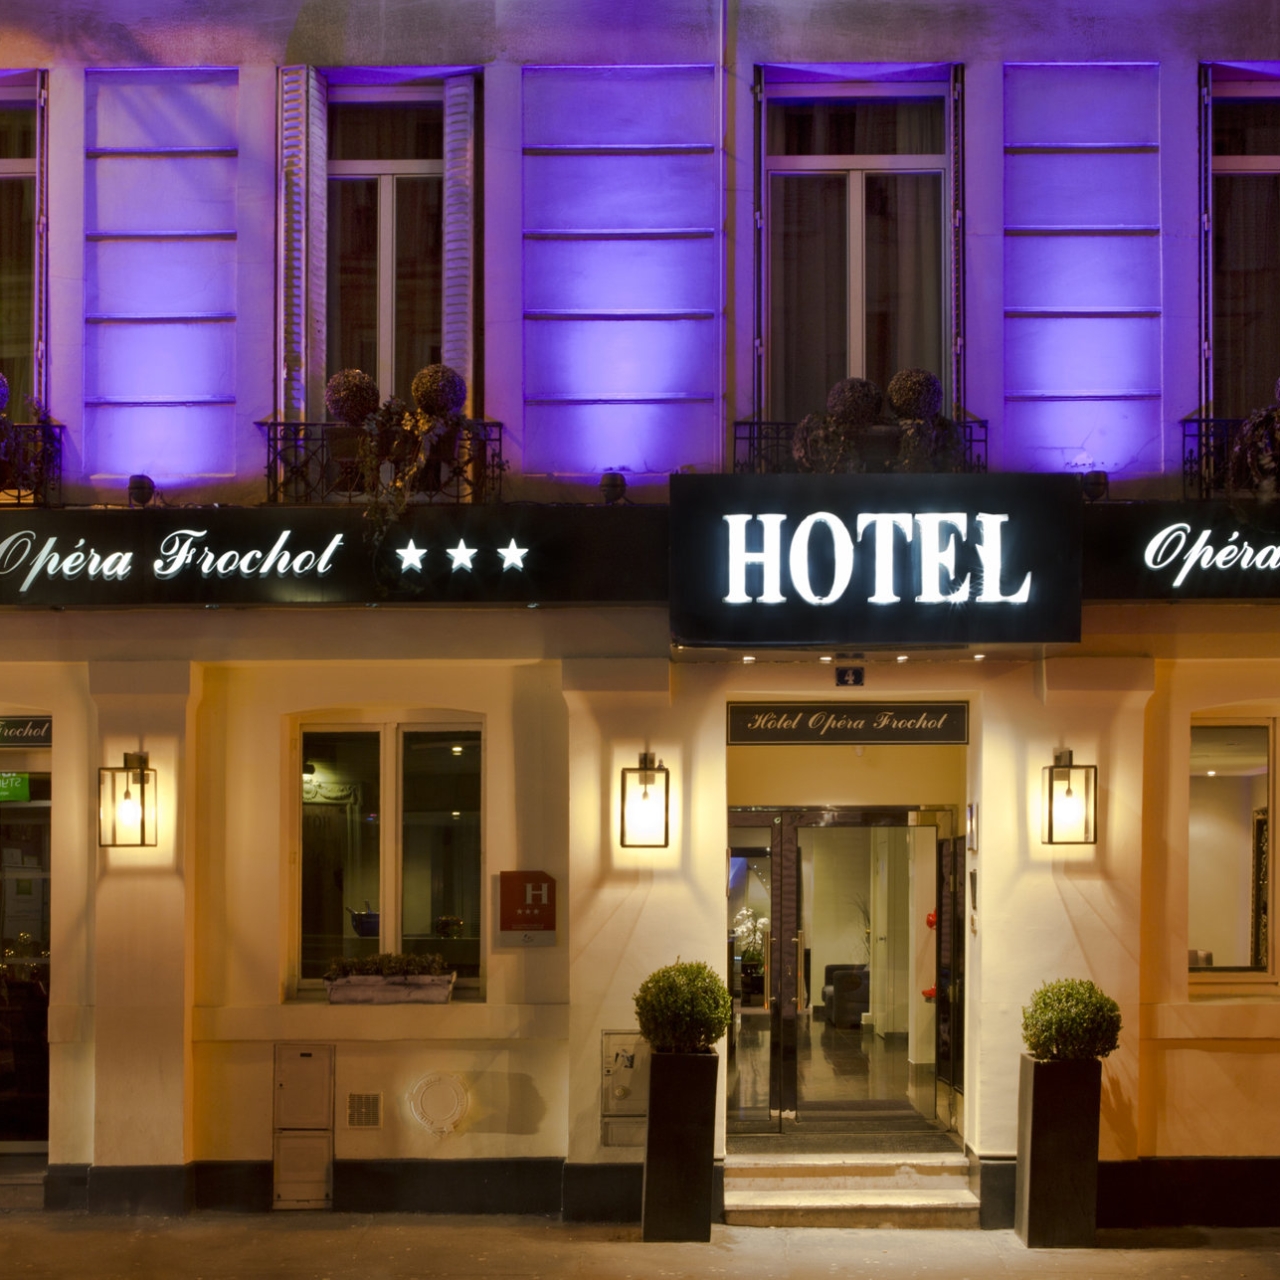 Hotel Opera Frochot - 3 HRS star hotel in Paris (Île-de-France)